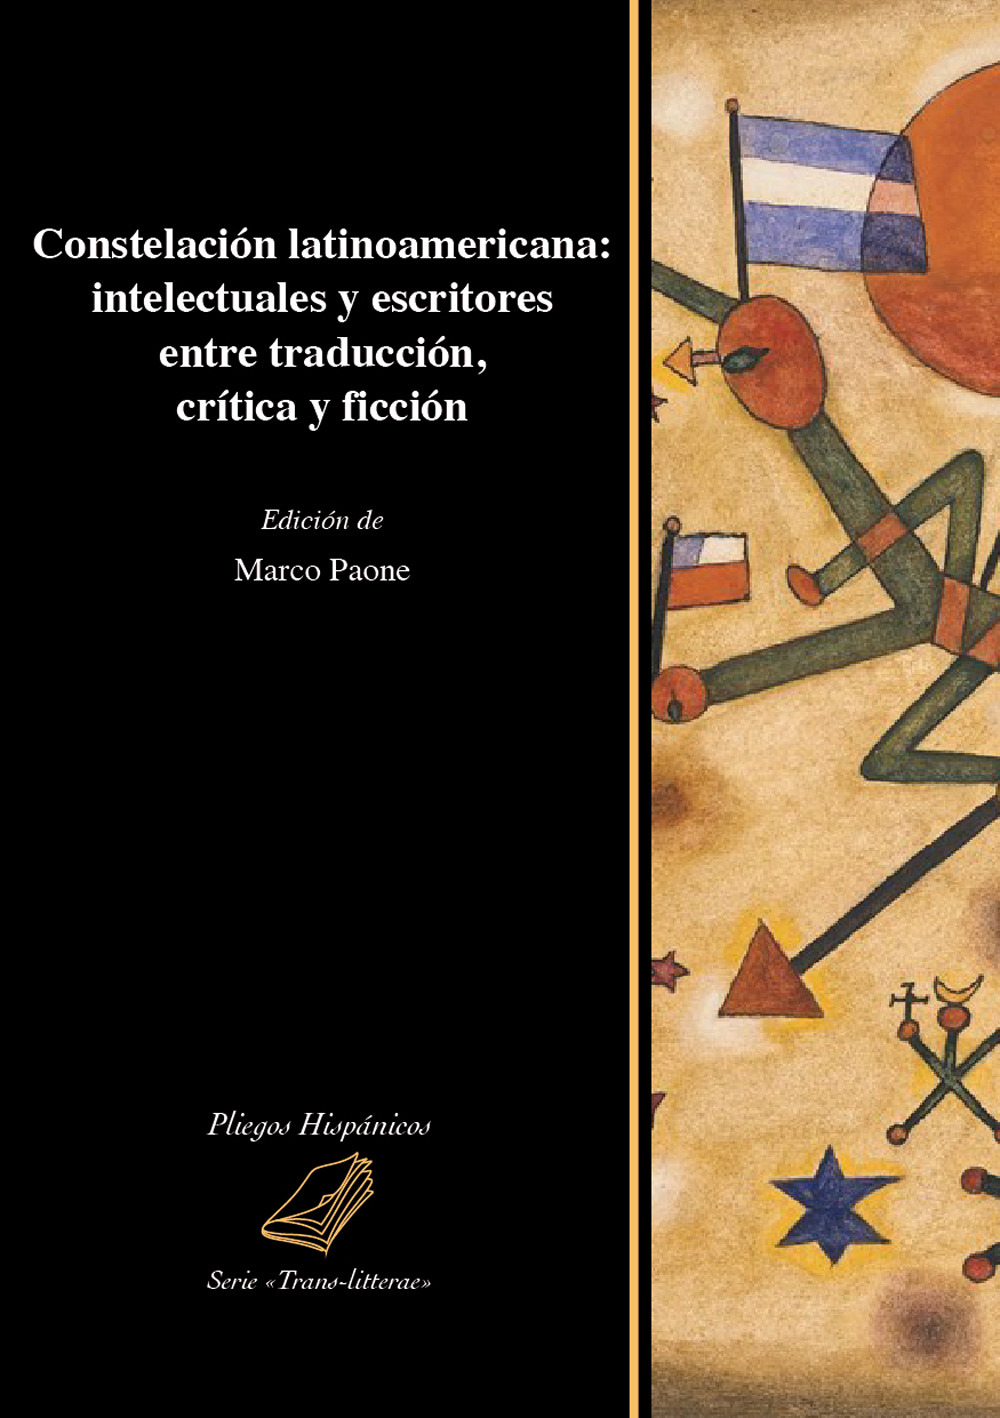 Constelación latinoamericana: intelectuales y escritores entre traducción, crítica y ficción